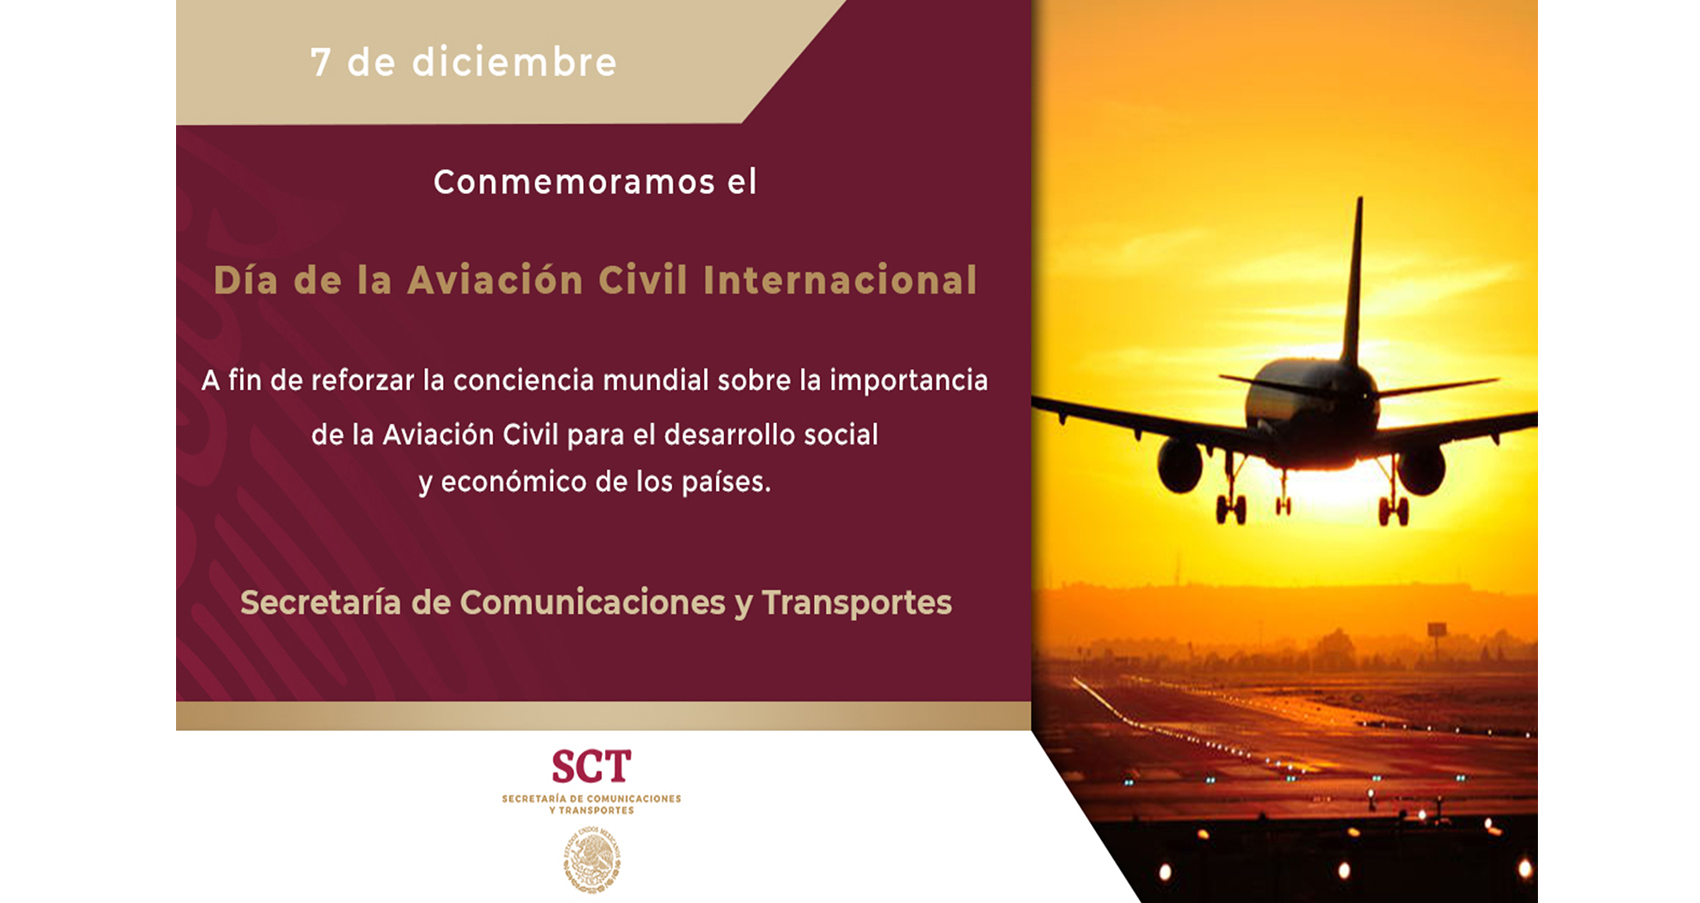 Conmemoramos el Día de la Aviación Civil Internacional